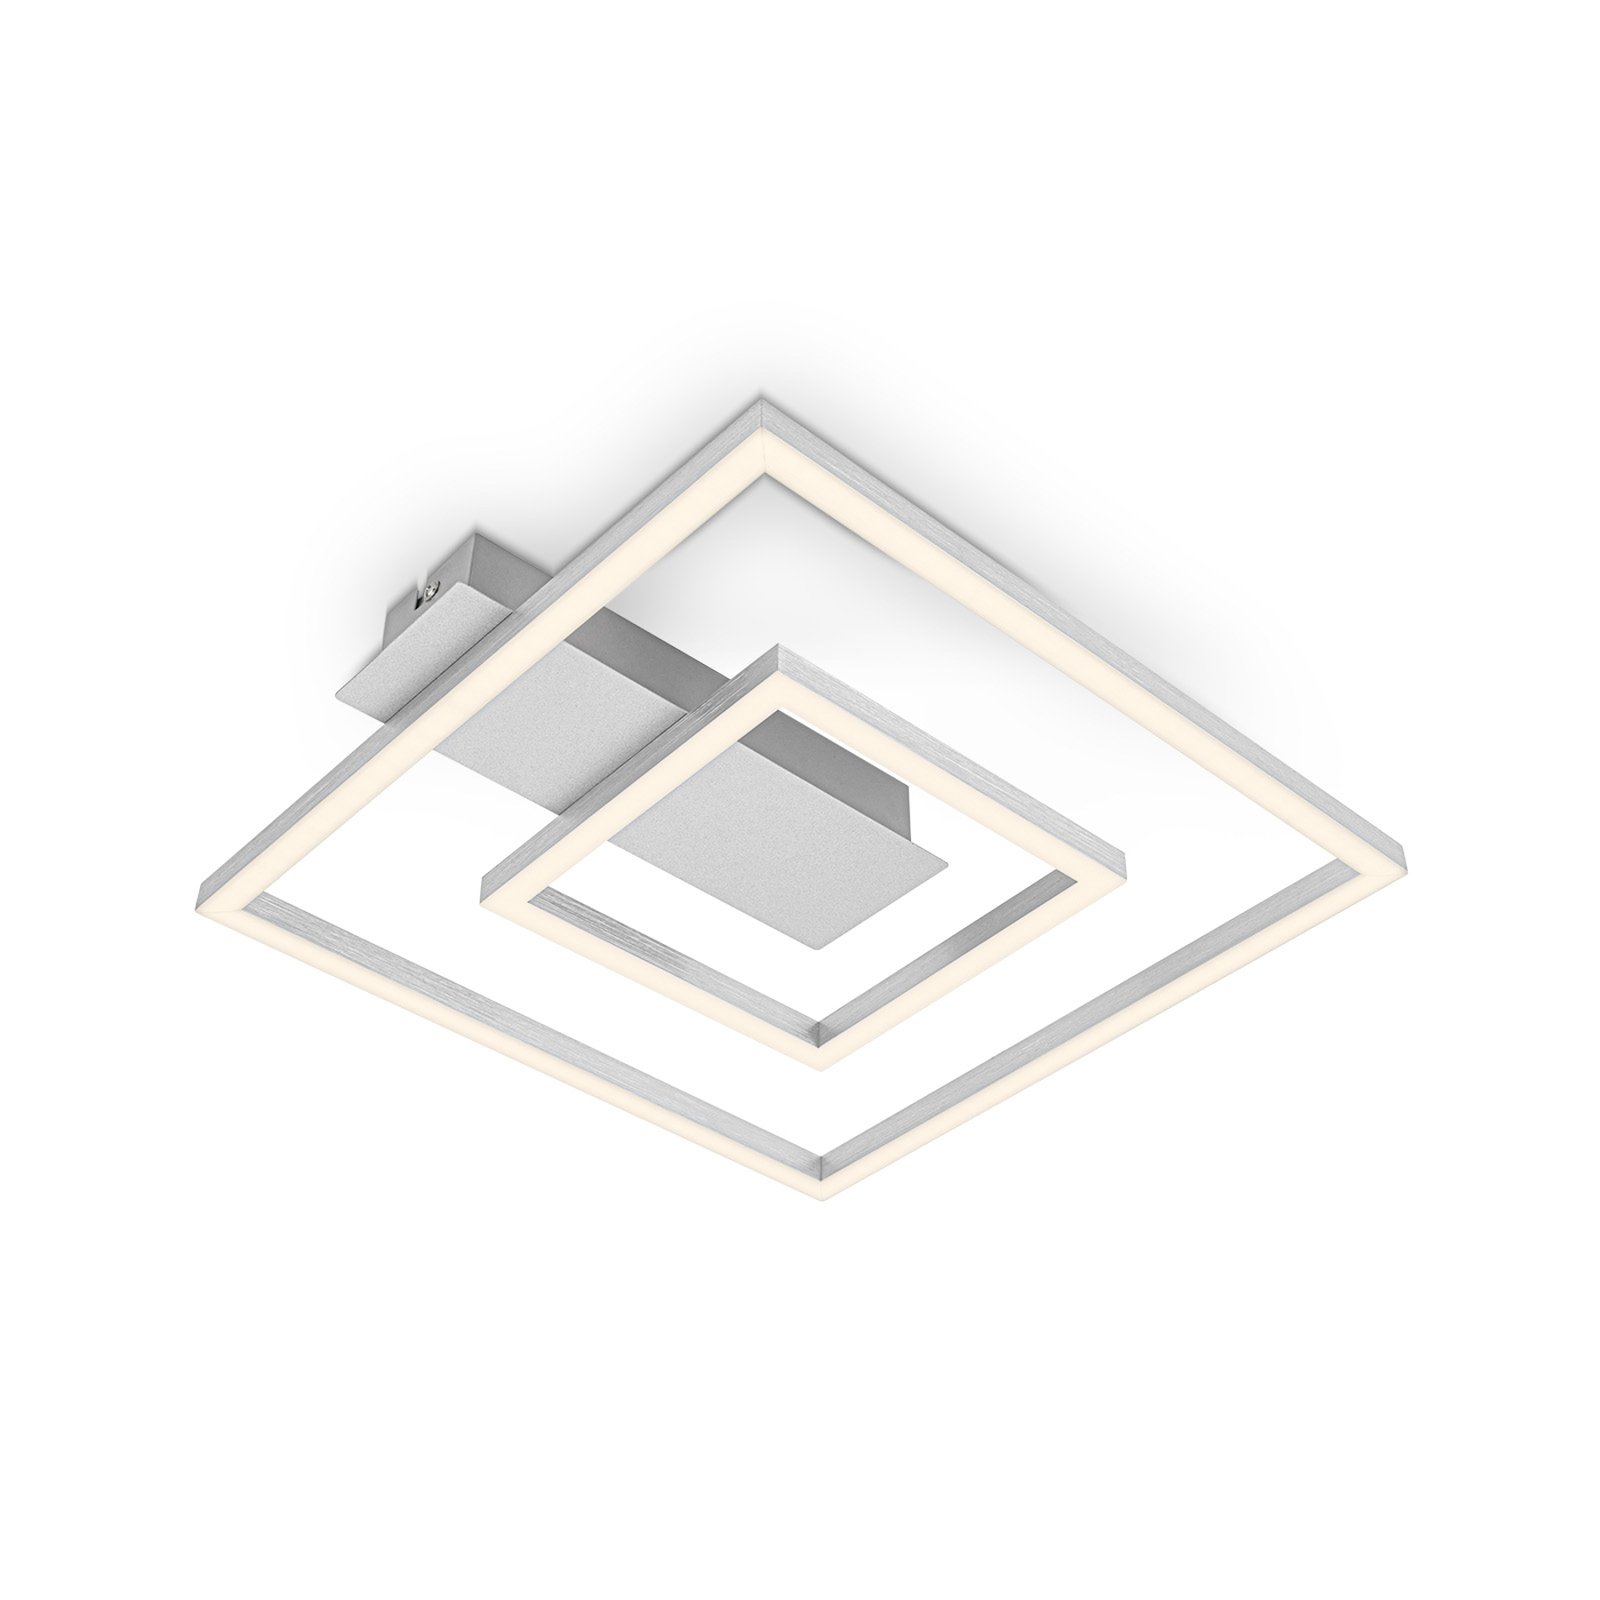 Plafón LED 3772 con 2 marco, aluminio